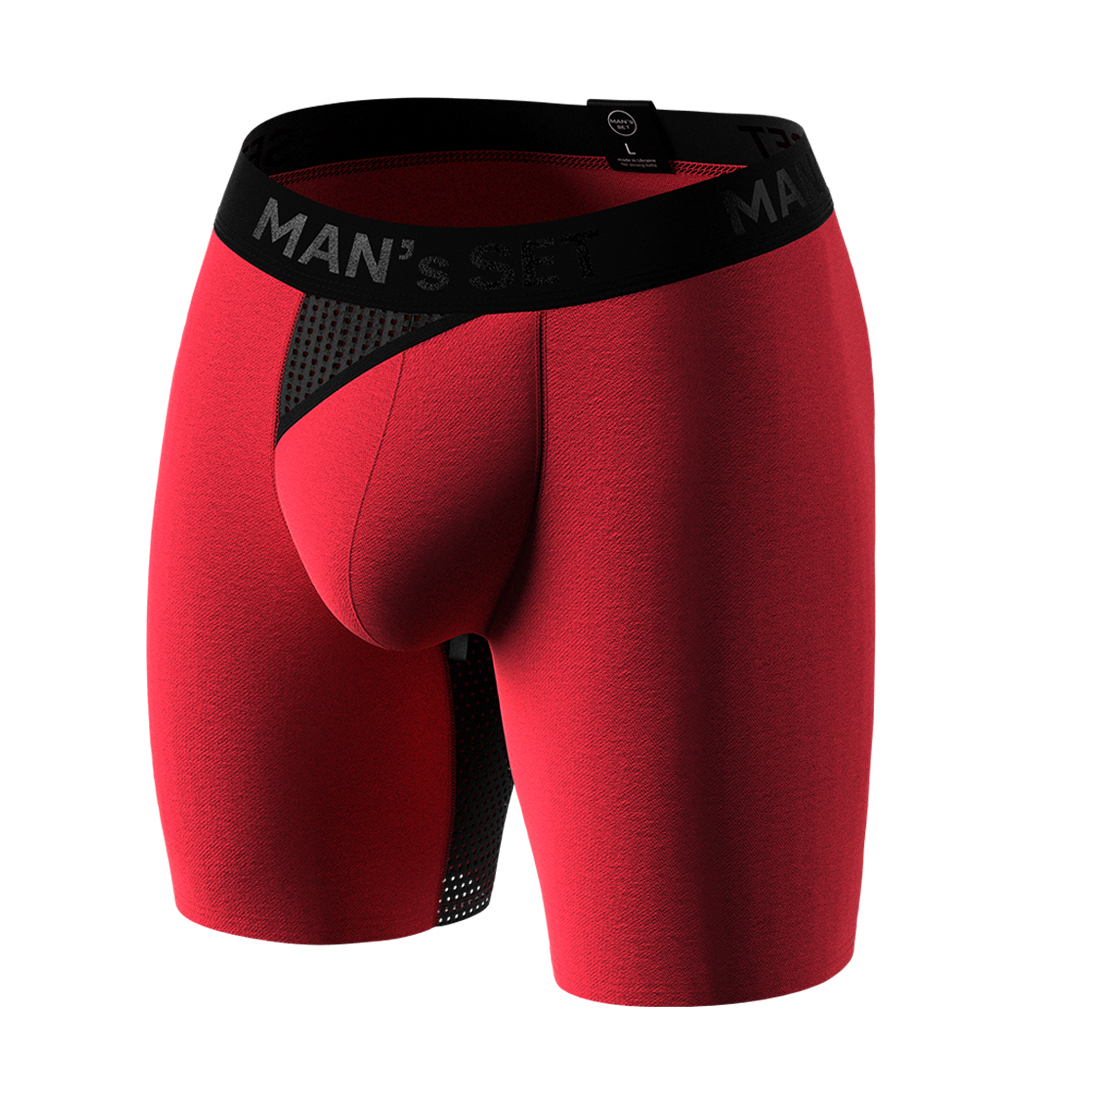 Мужские анатомические боксеры из хлопка, Anatomic Long 2.0 Light, Black Series, красный MansSet